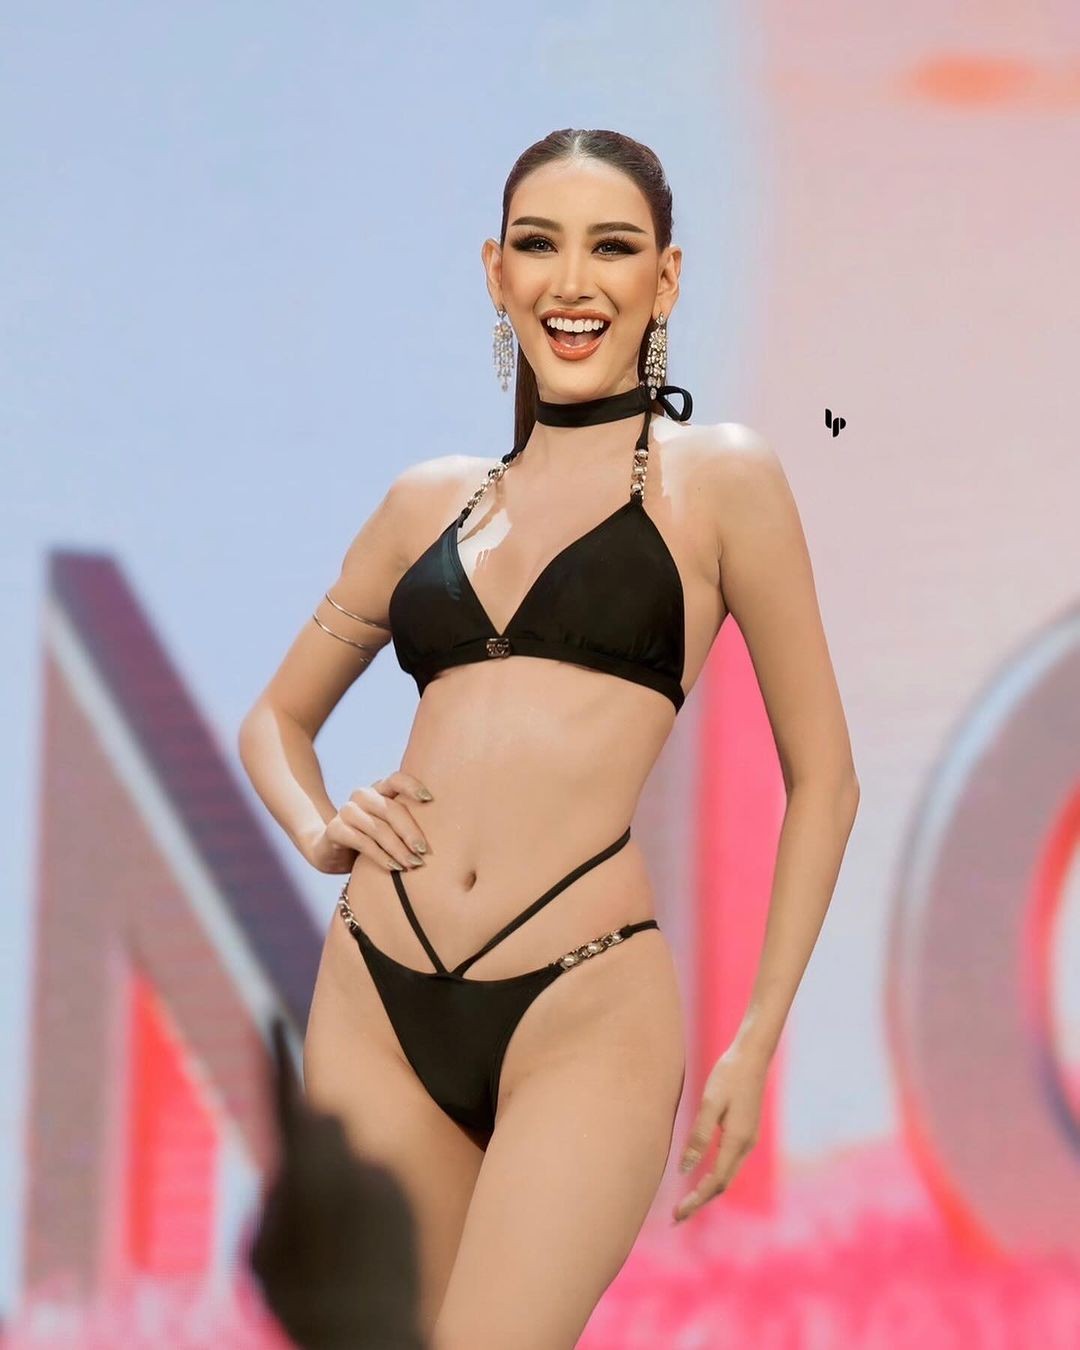 Người đẹp cao 1,76 m gây chú ý ở Hoa hậu Hòa bình Thái Lan ảnh 5